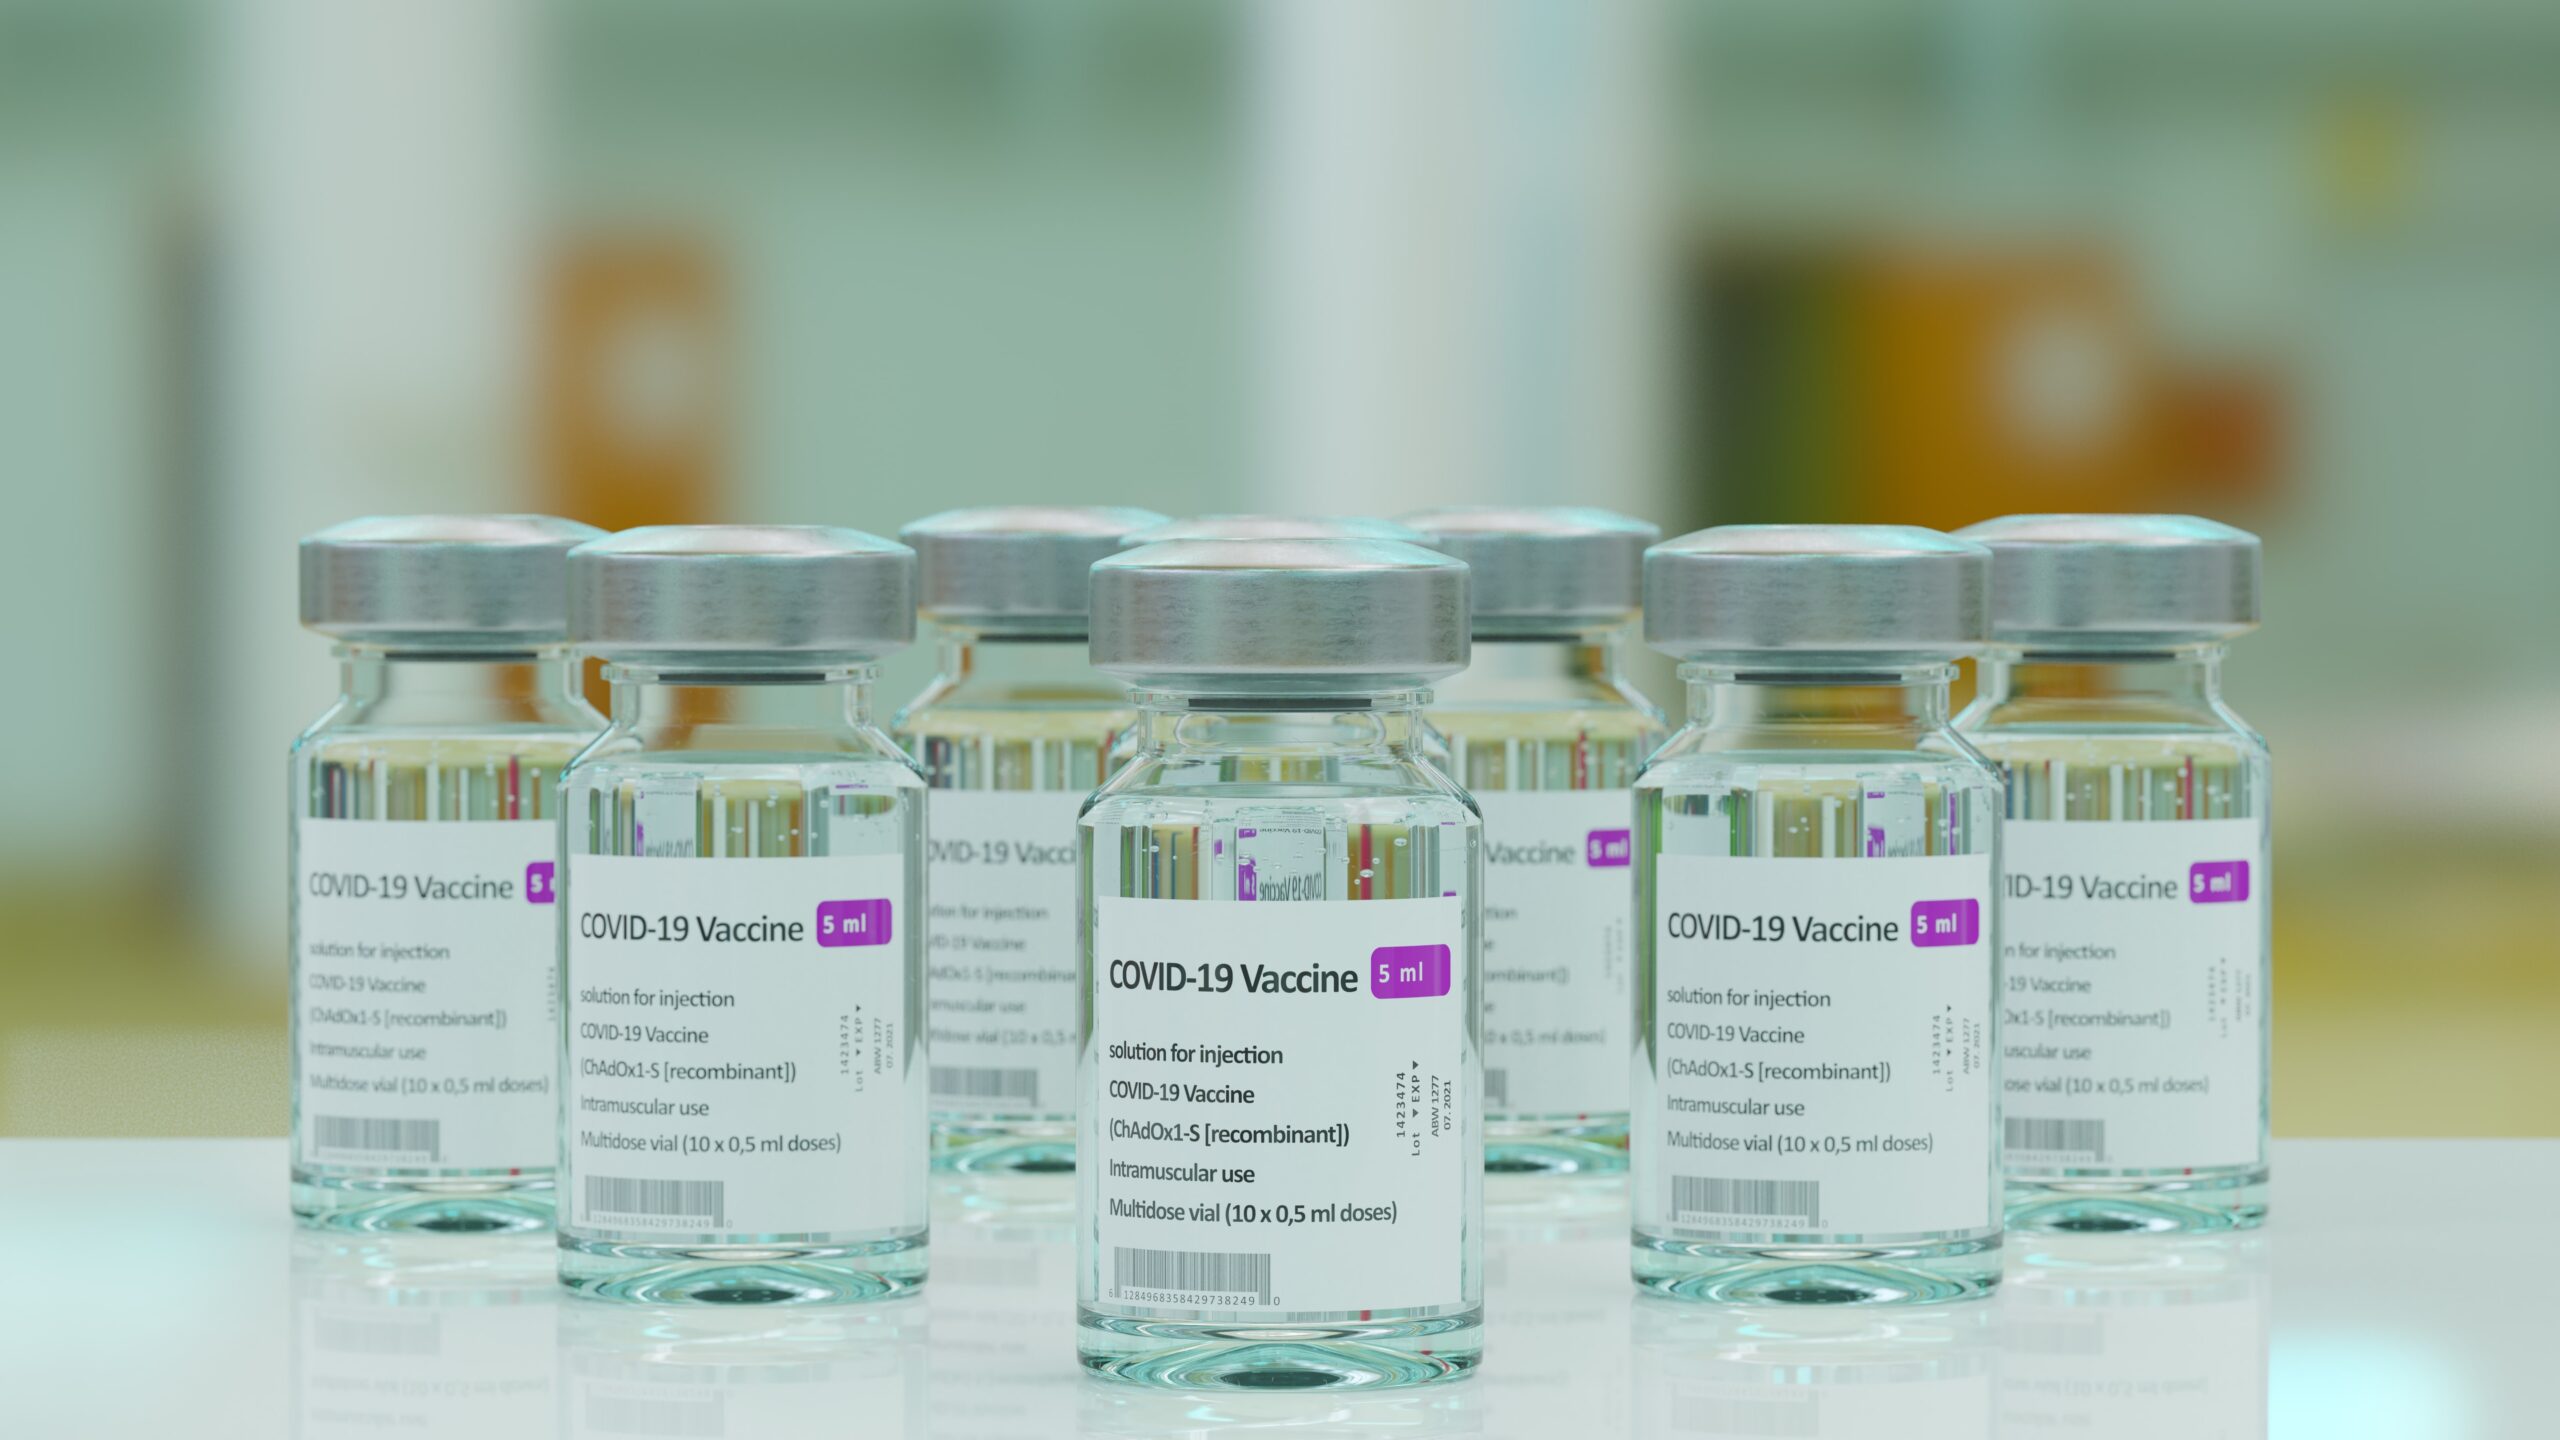 vials of COVID-19 vaccine doses